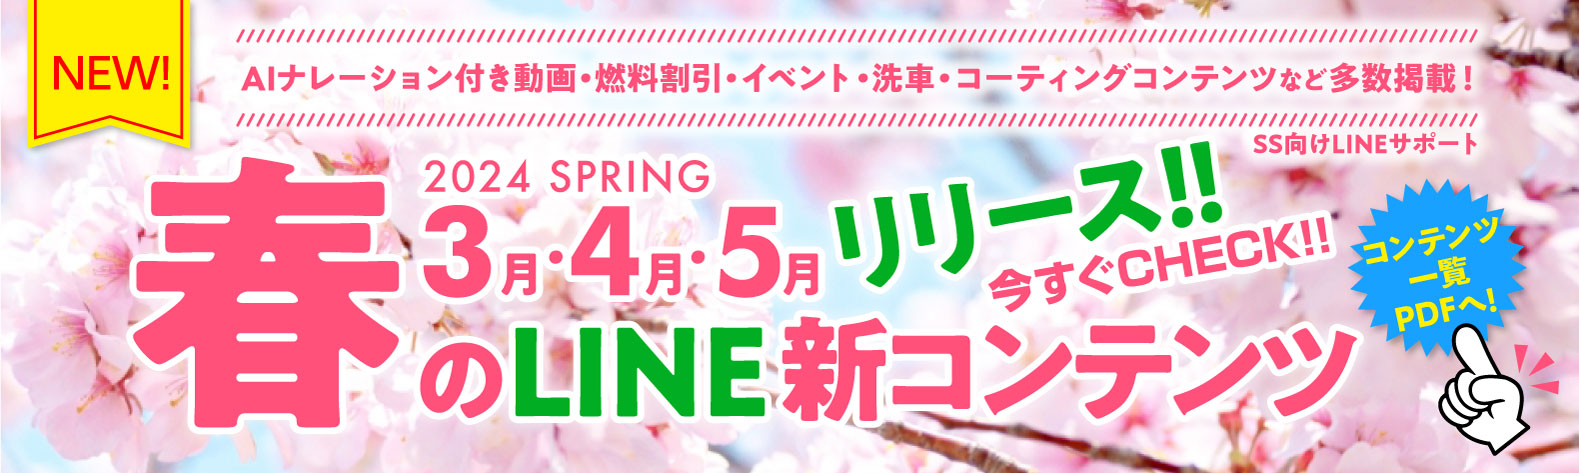 24春3月4月5月 SS向けLINE新コンテンツ